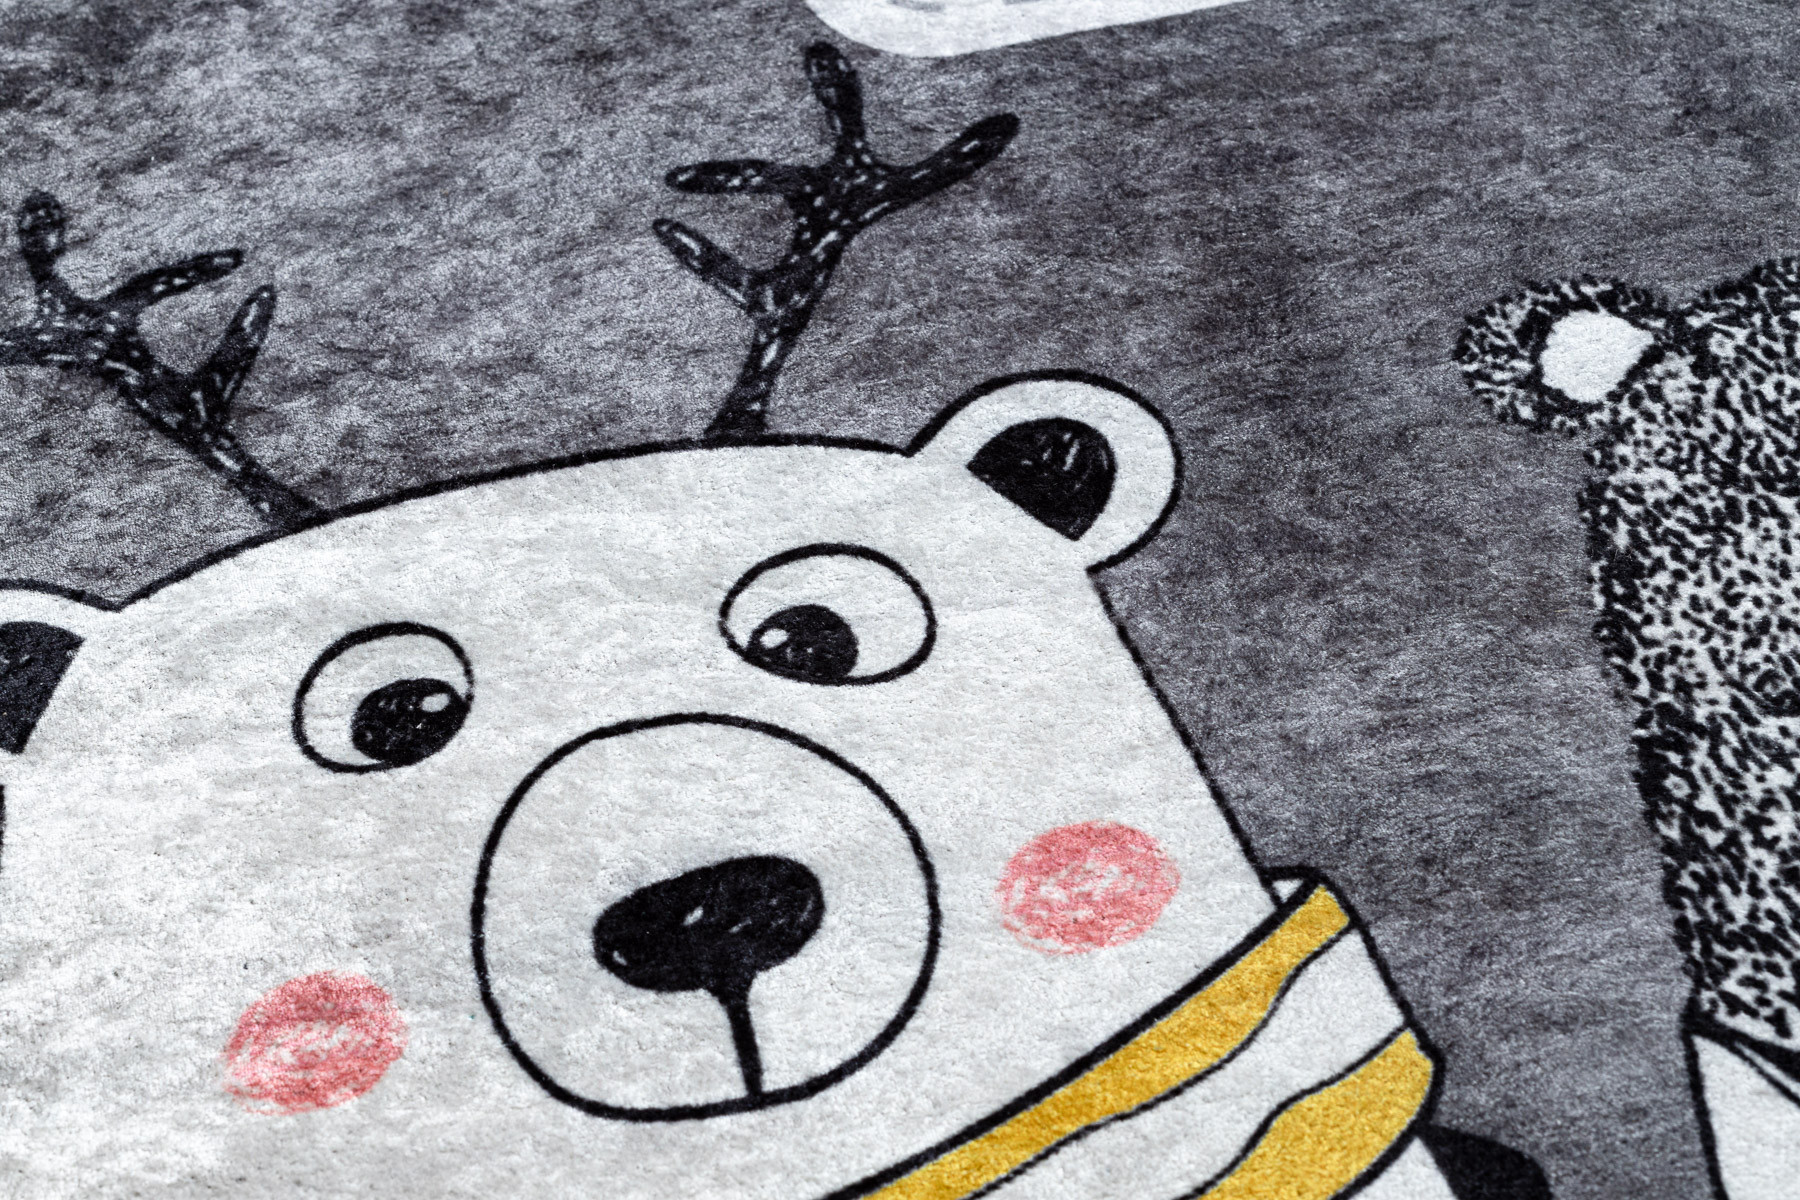 Dětský koberec JUNIOR 52107.801 medvídci, zvířátka - šedý